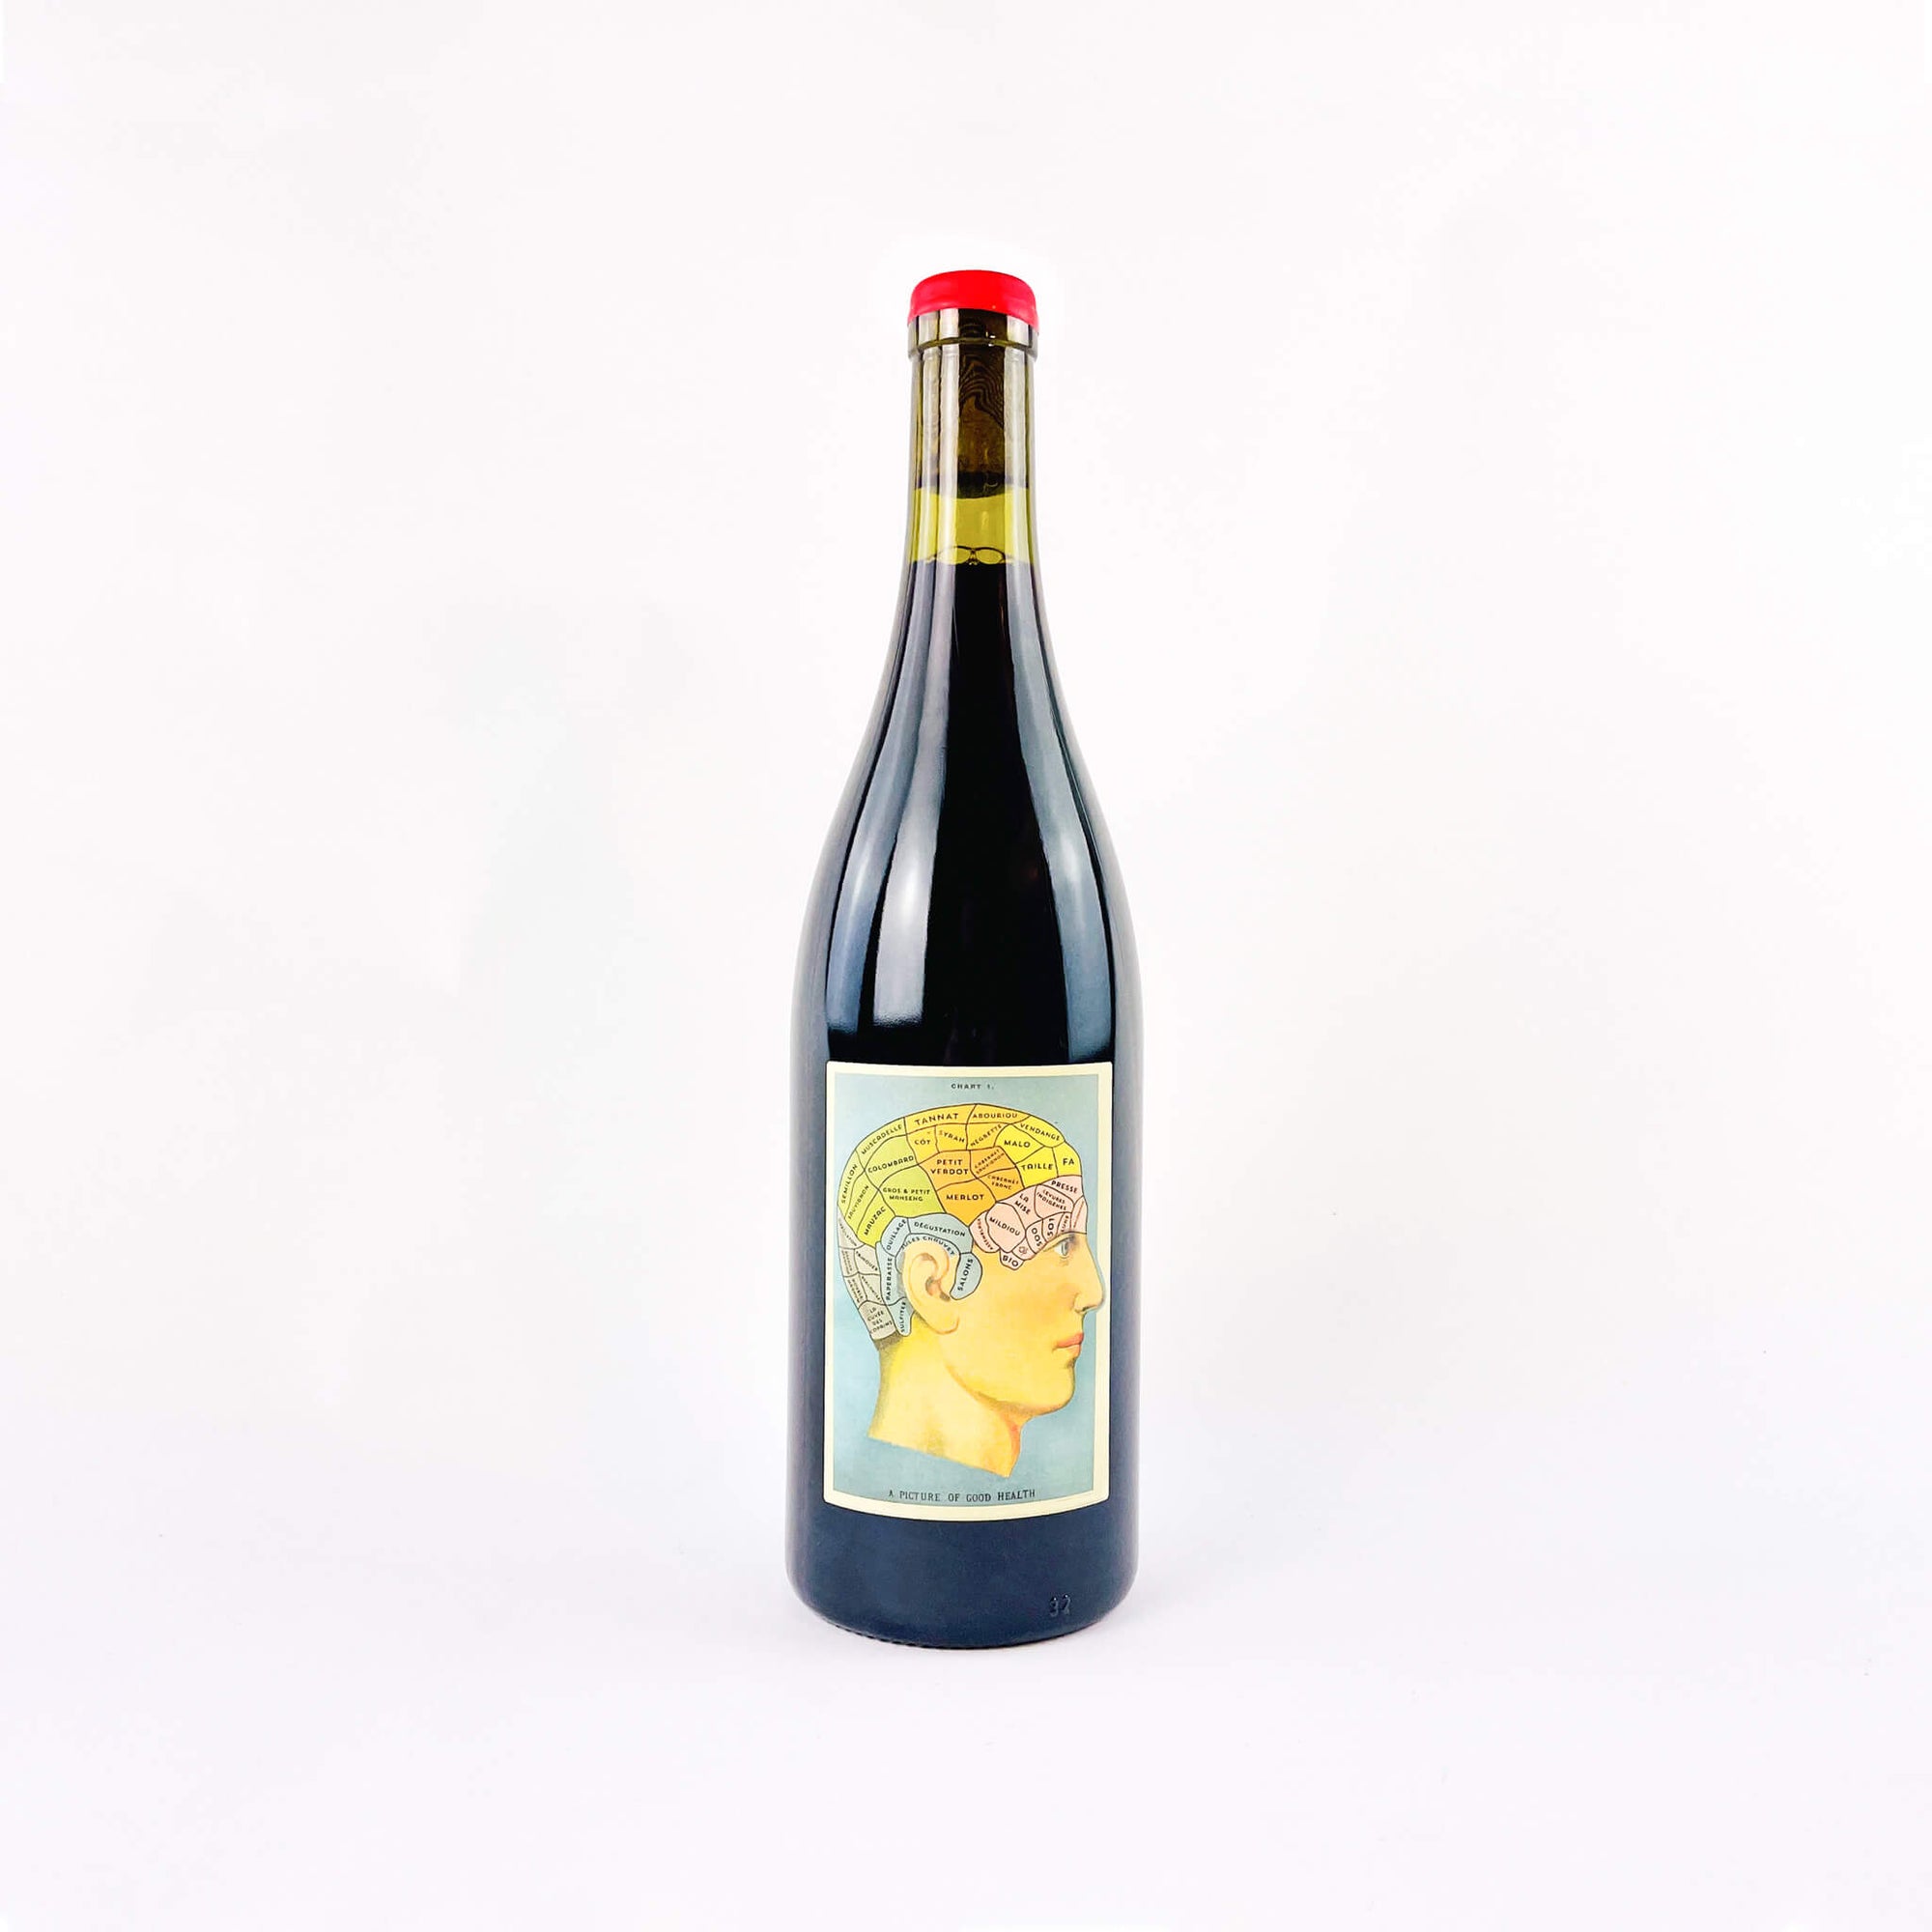 A bottle of red natural wine Vignoble Buquet Dans la Tete de Vigneron front view